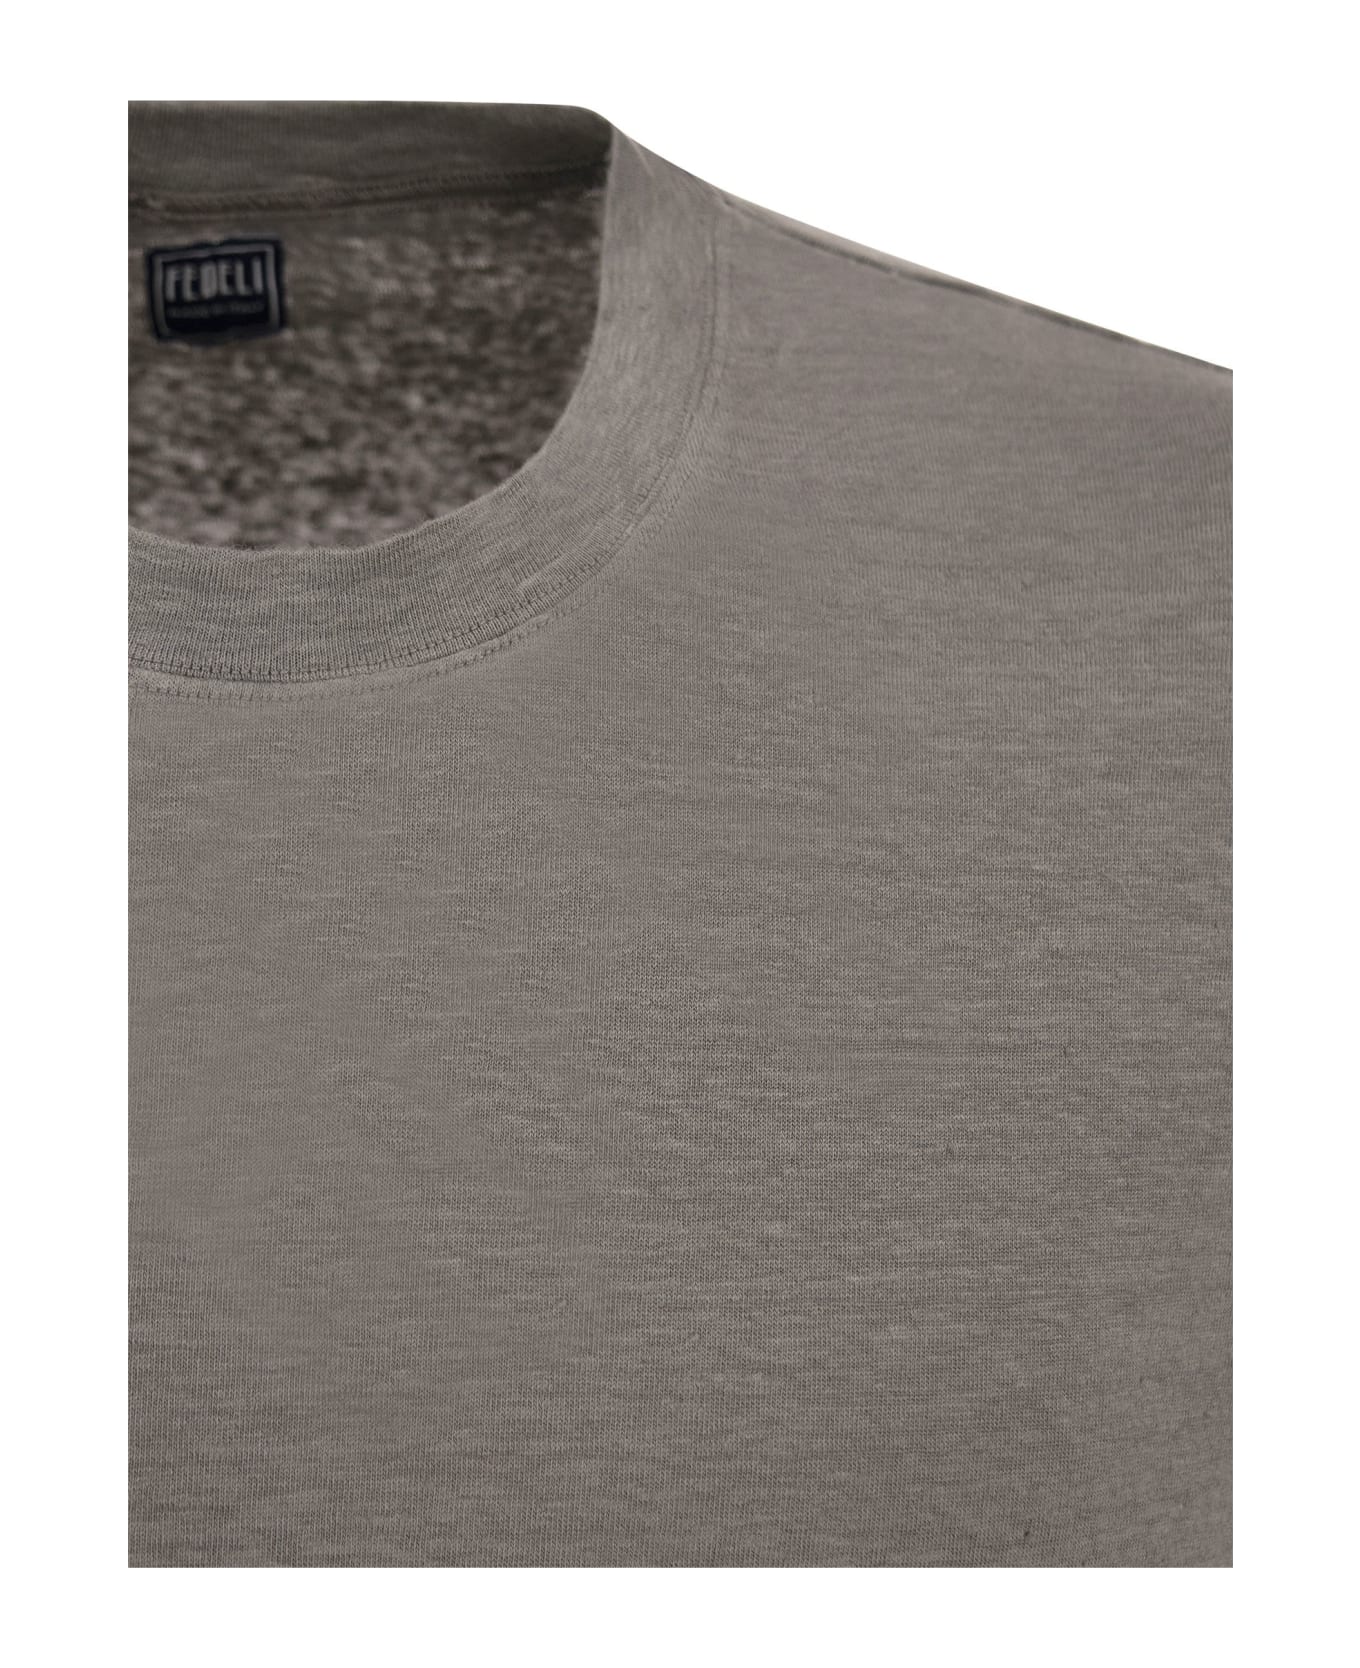 Fedeli Exreme - Linen Flex T-shirt - Smoke